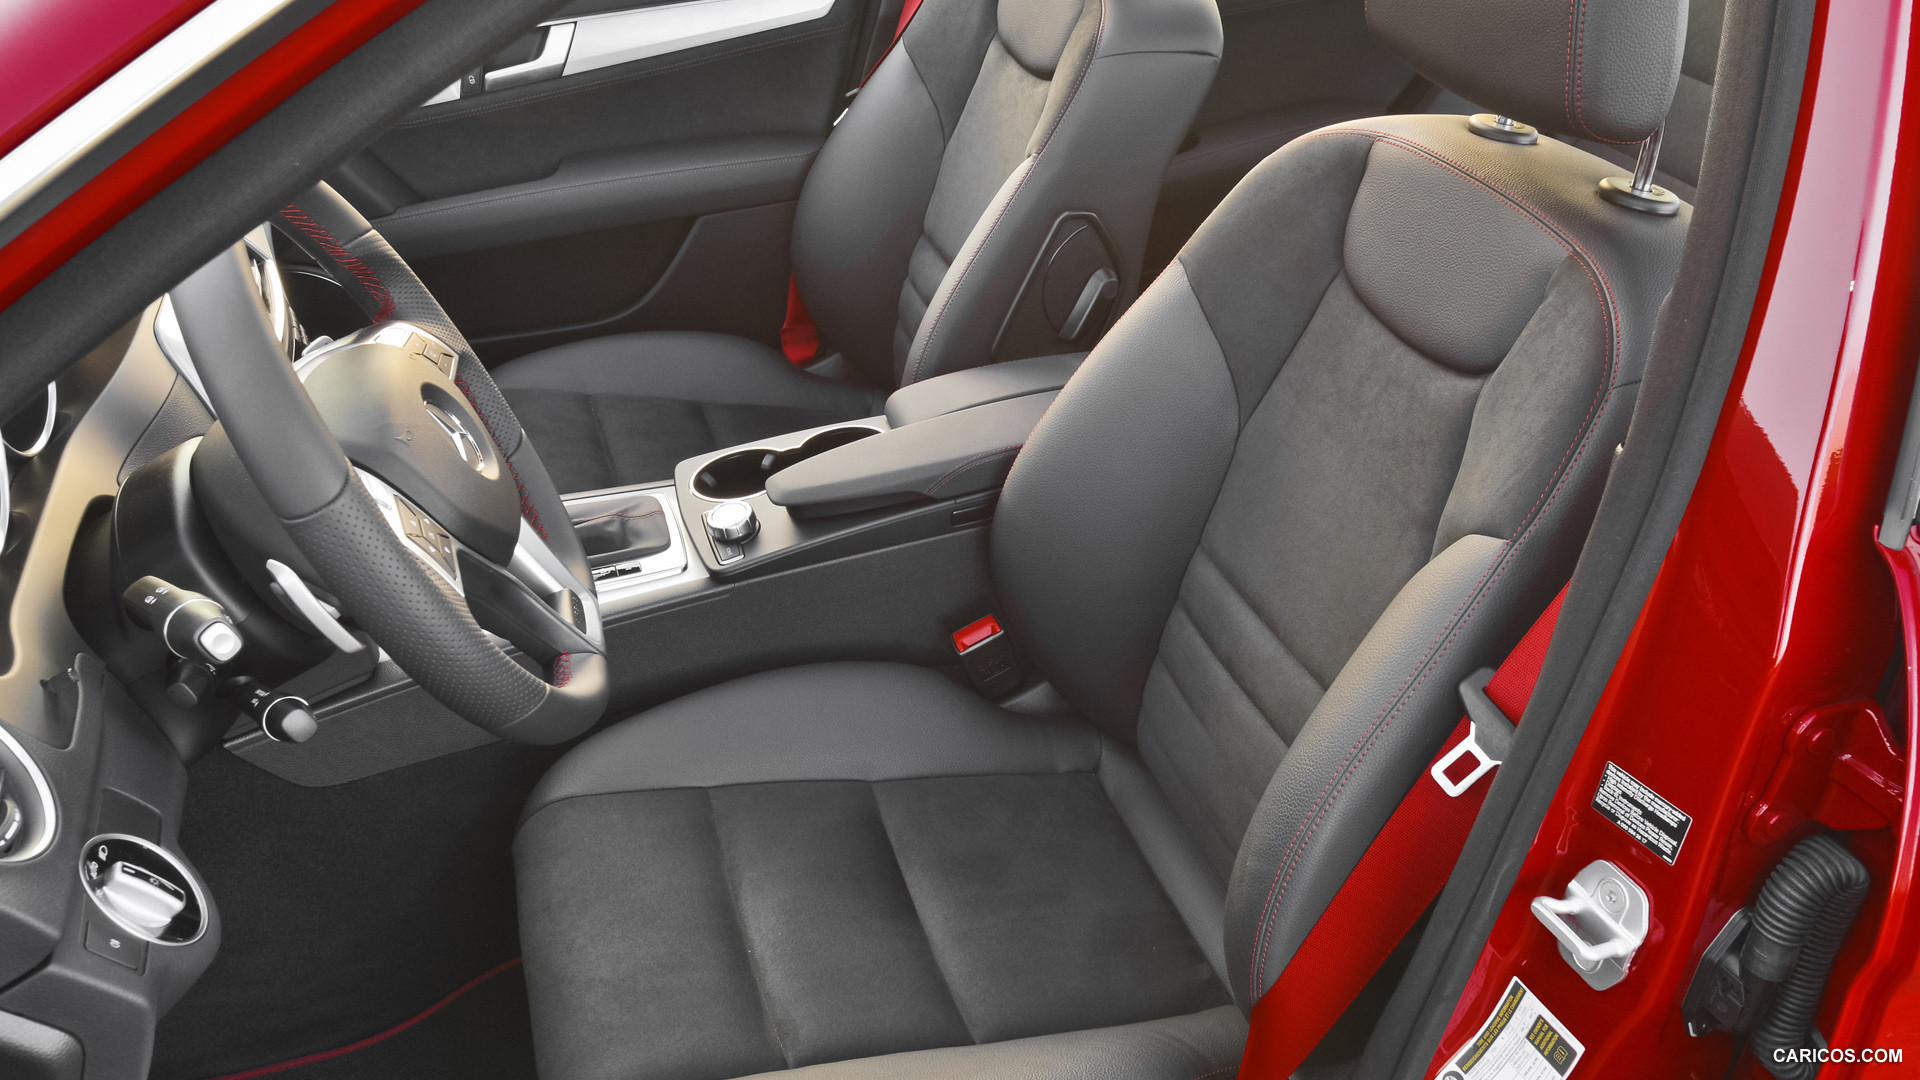 2013 Mercedes Benz C250 Sedan Sport Package Plus Interior